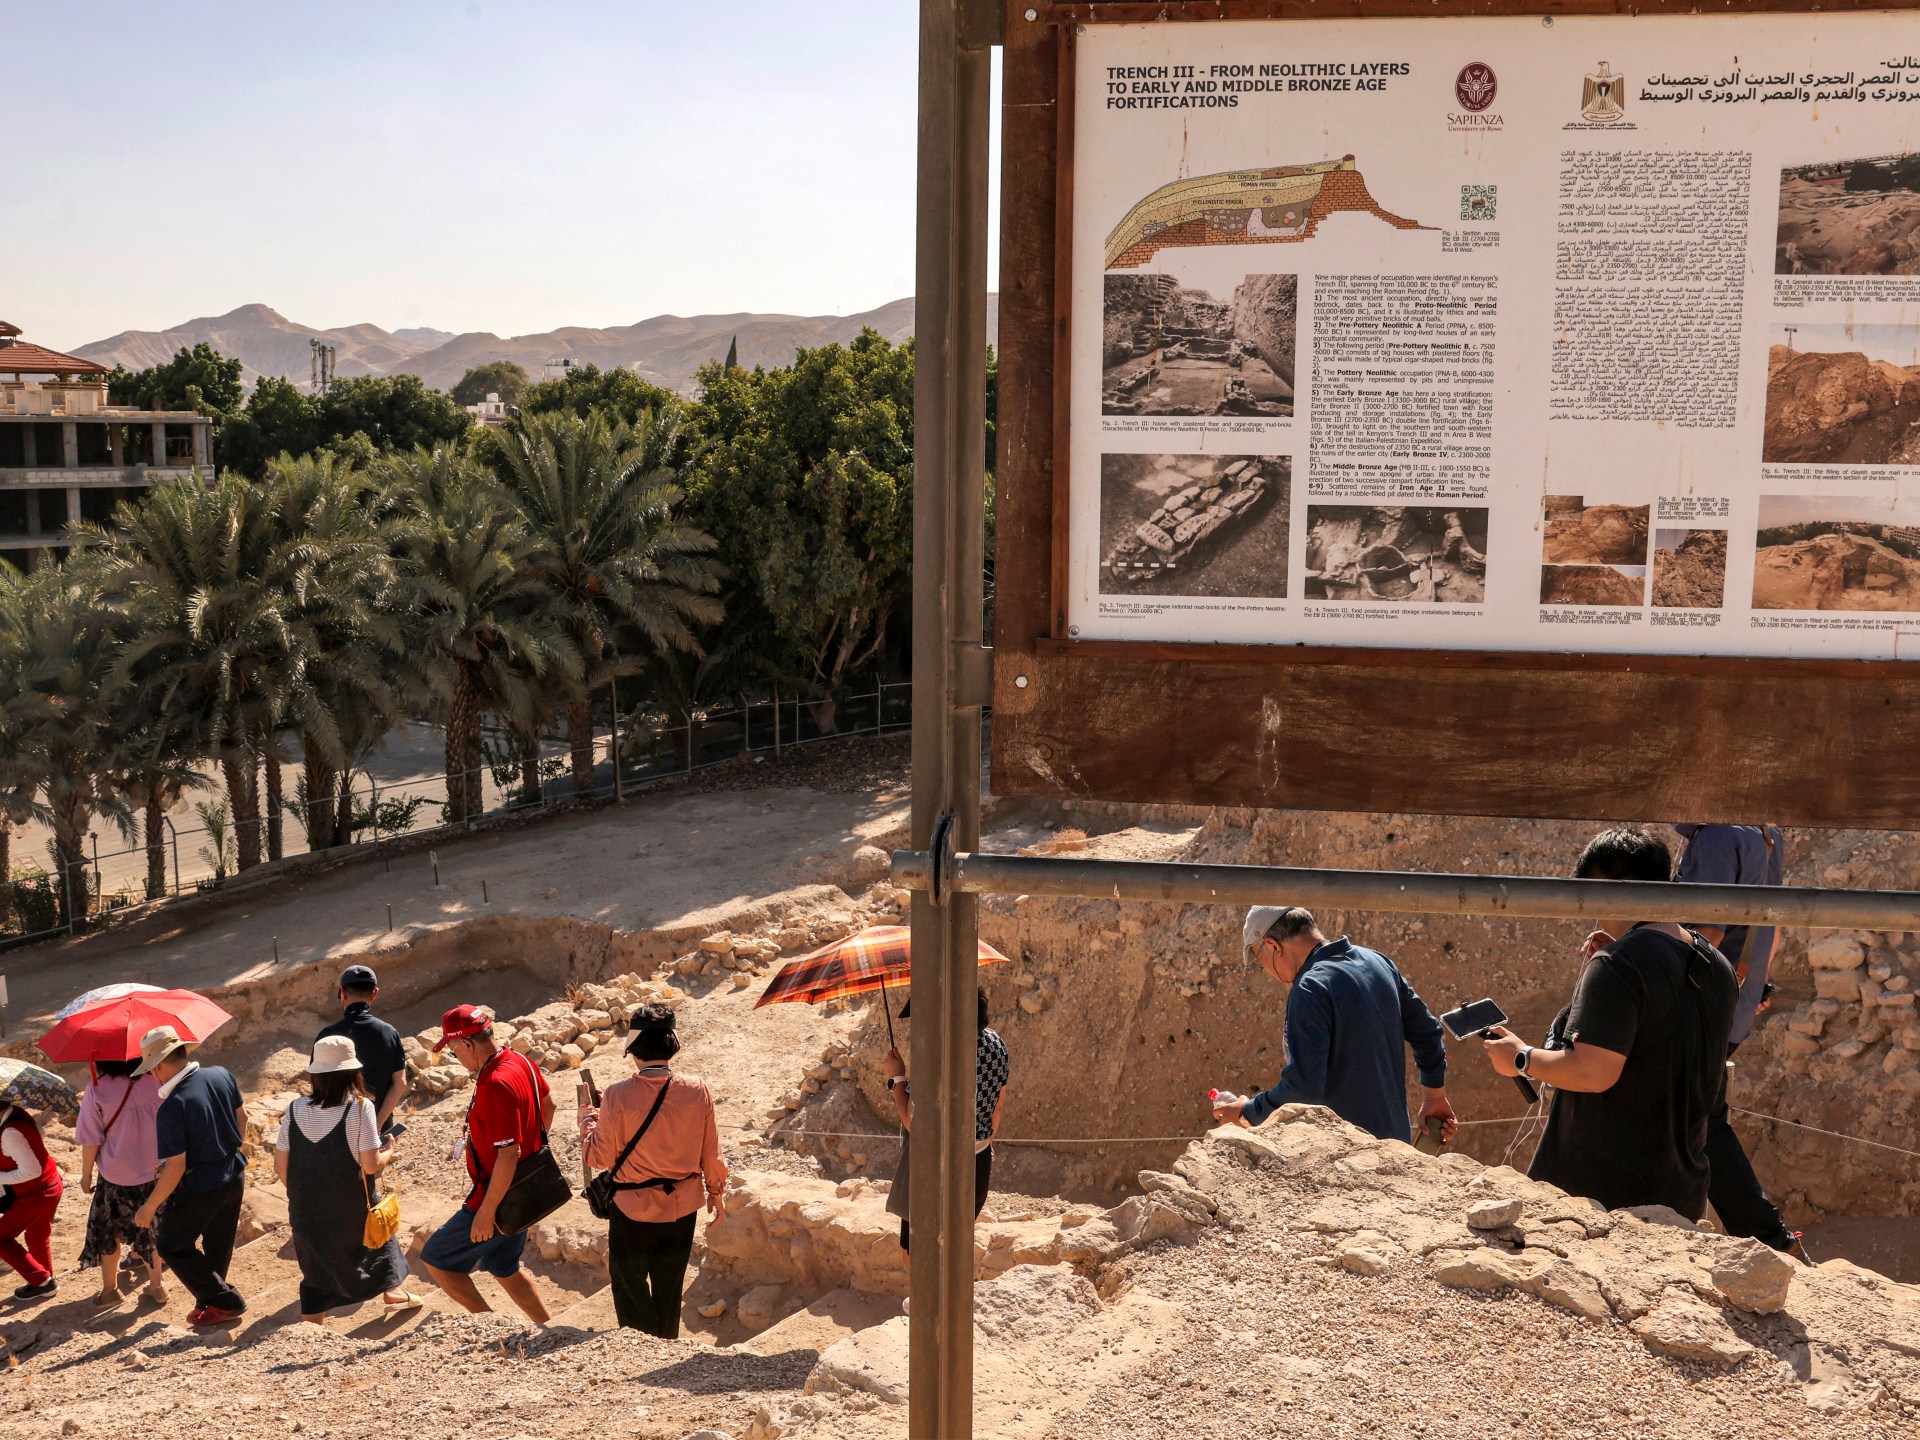 巴勒斯坦史前遗址被列入联合国教科文组织世界遗产名录历史新闻